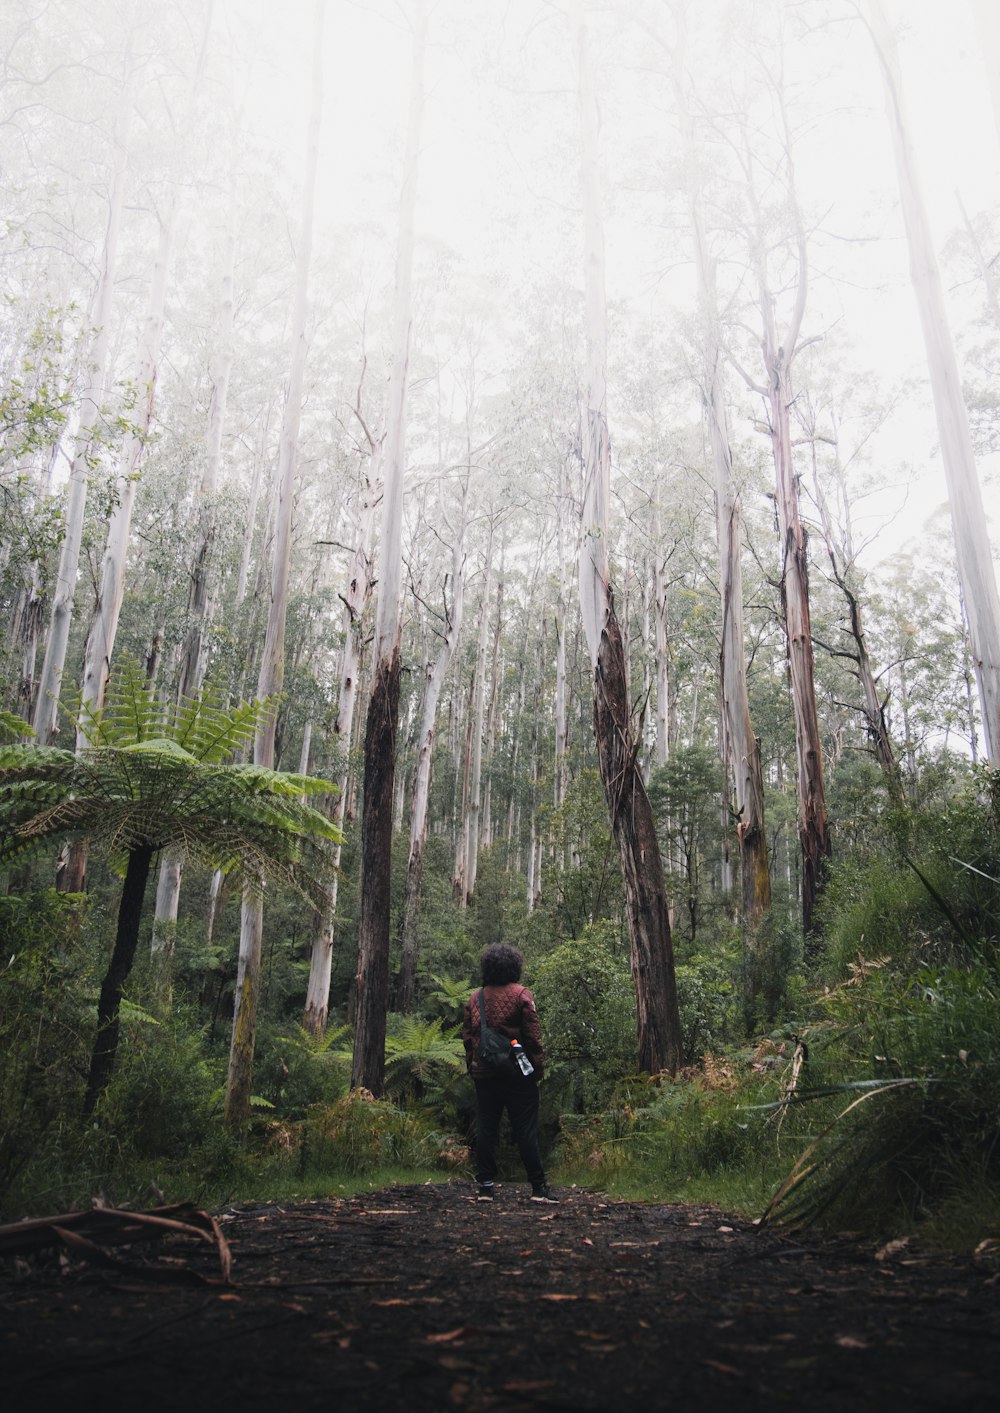 pessoa em jaqueta preta andando na floresta durante o dia nebuloso